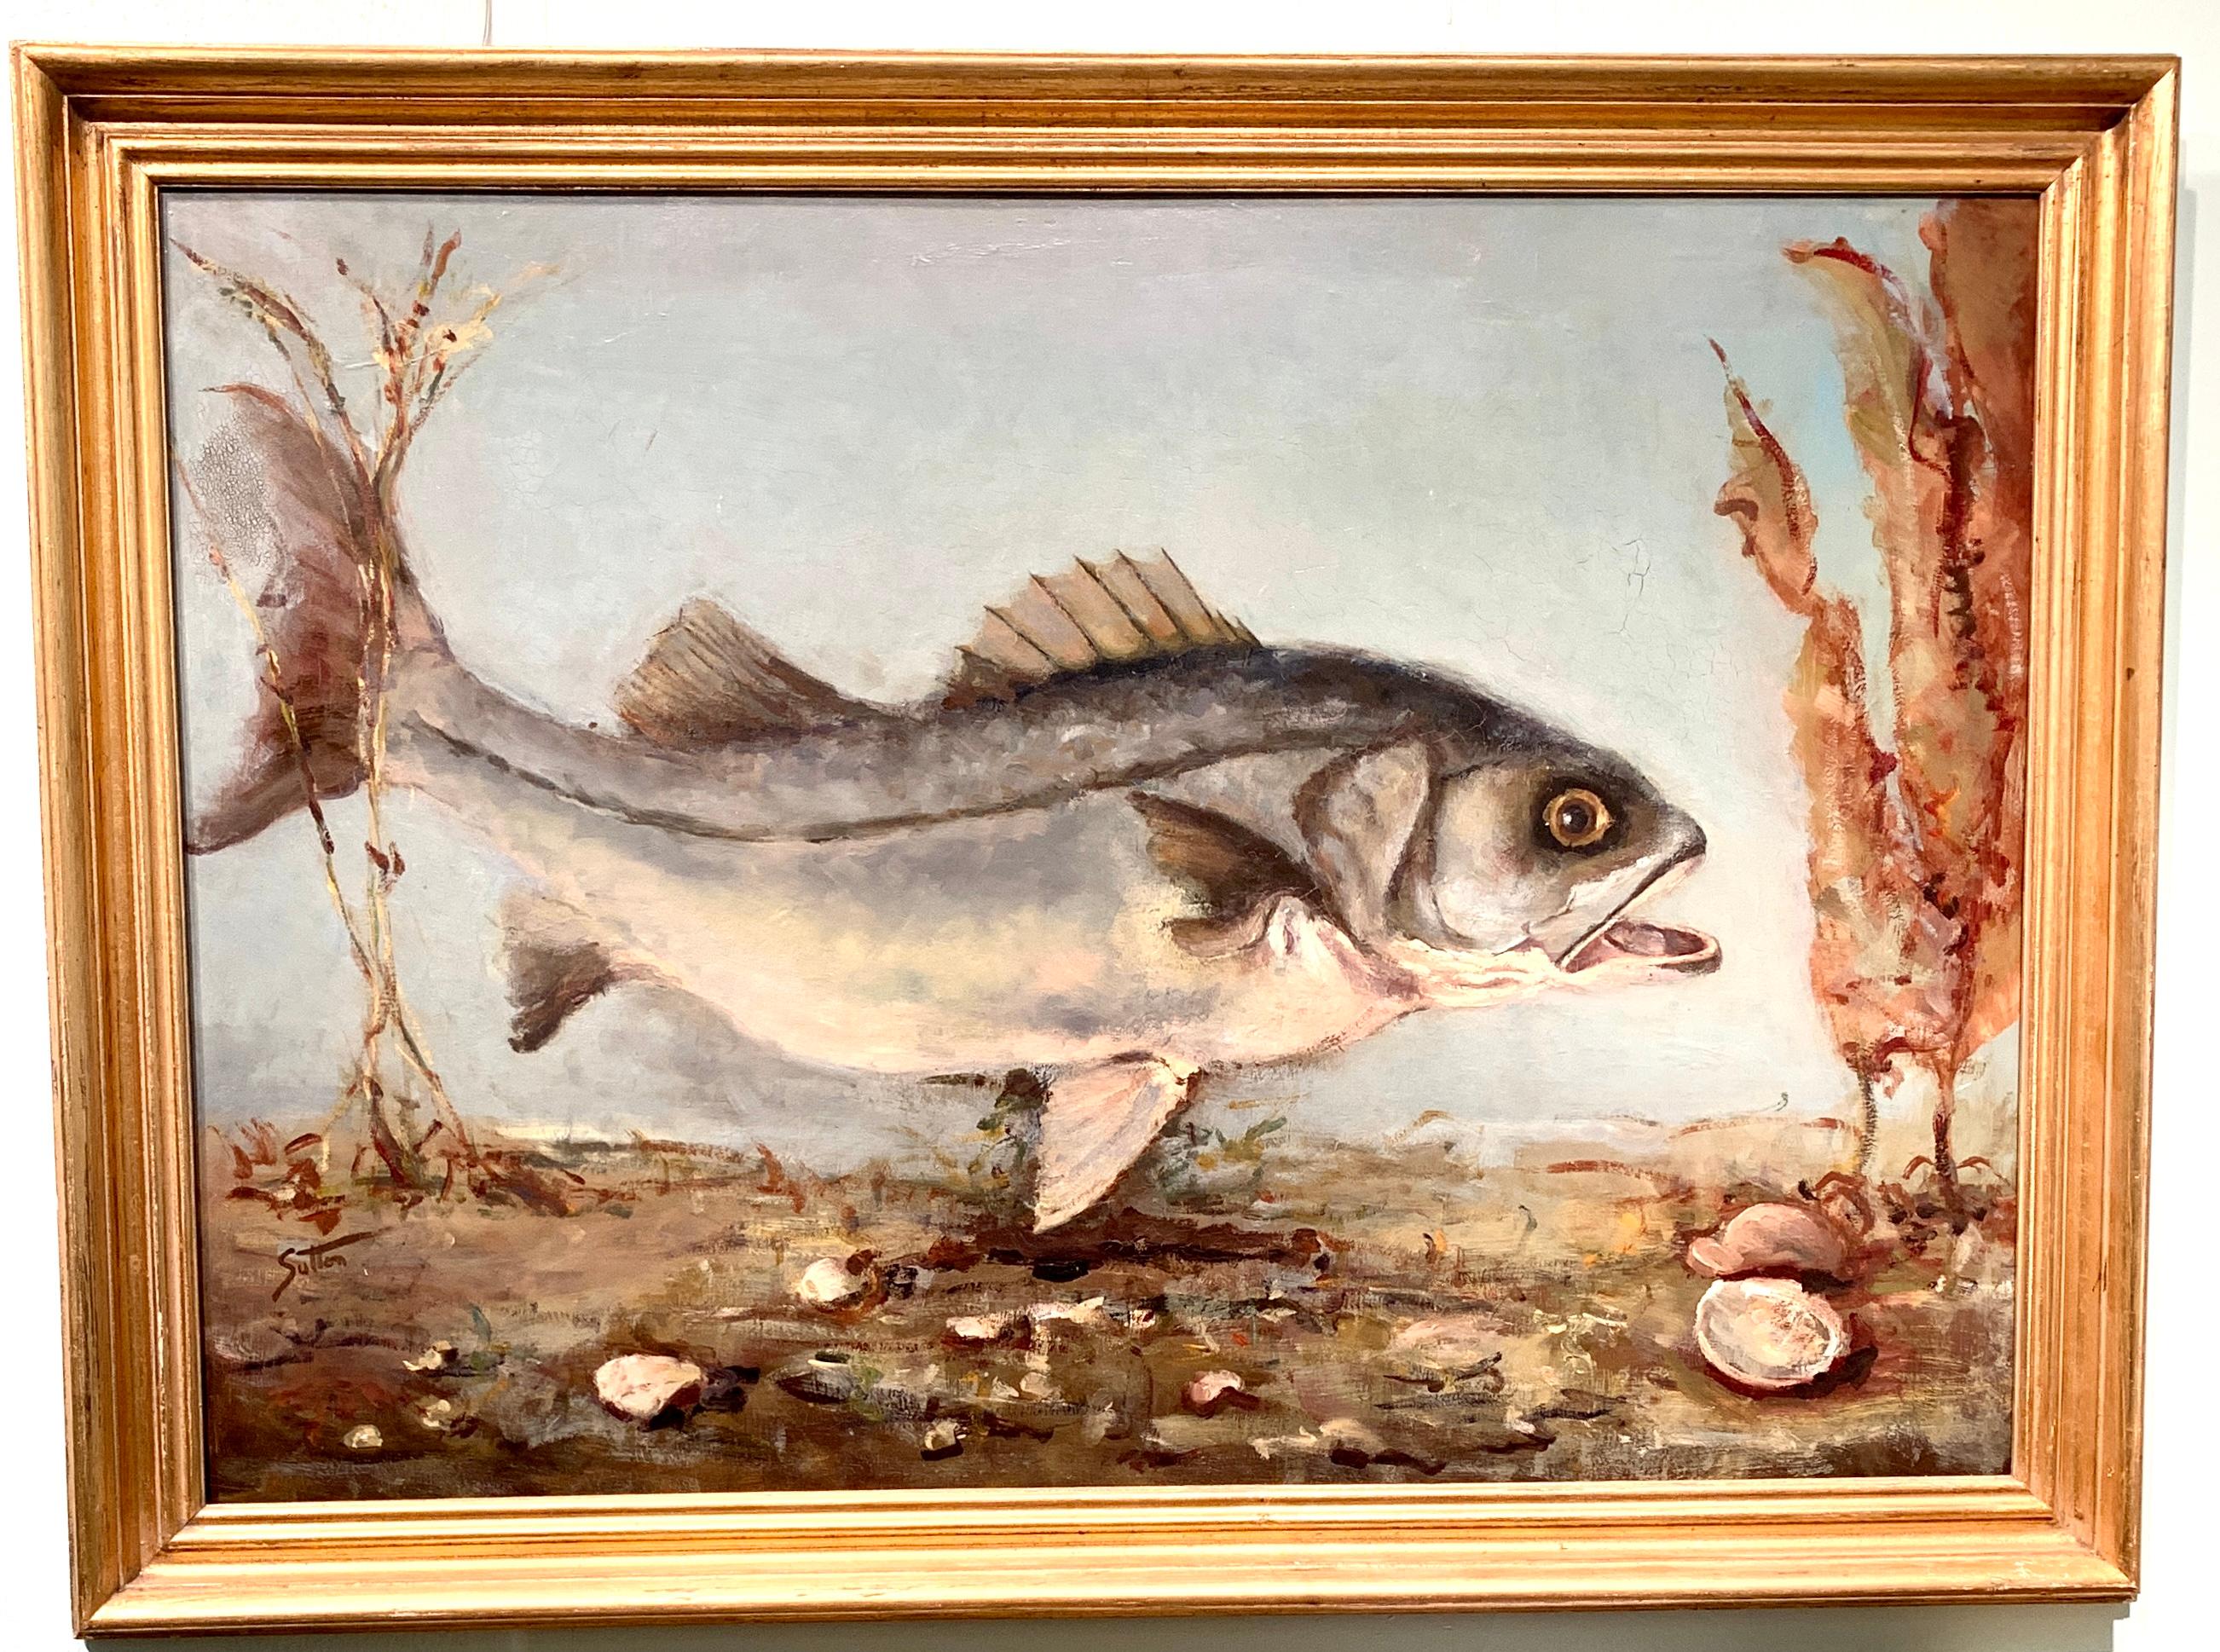 Portrait impressionniste américain d'un poisson nageant, peut-être une carpe ou un Bass